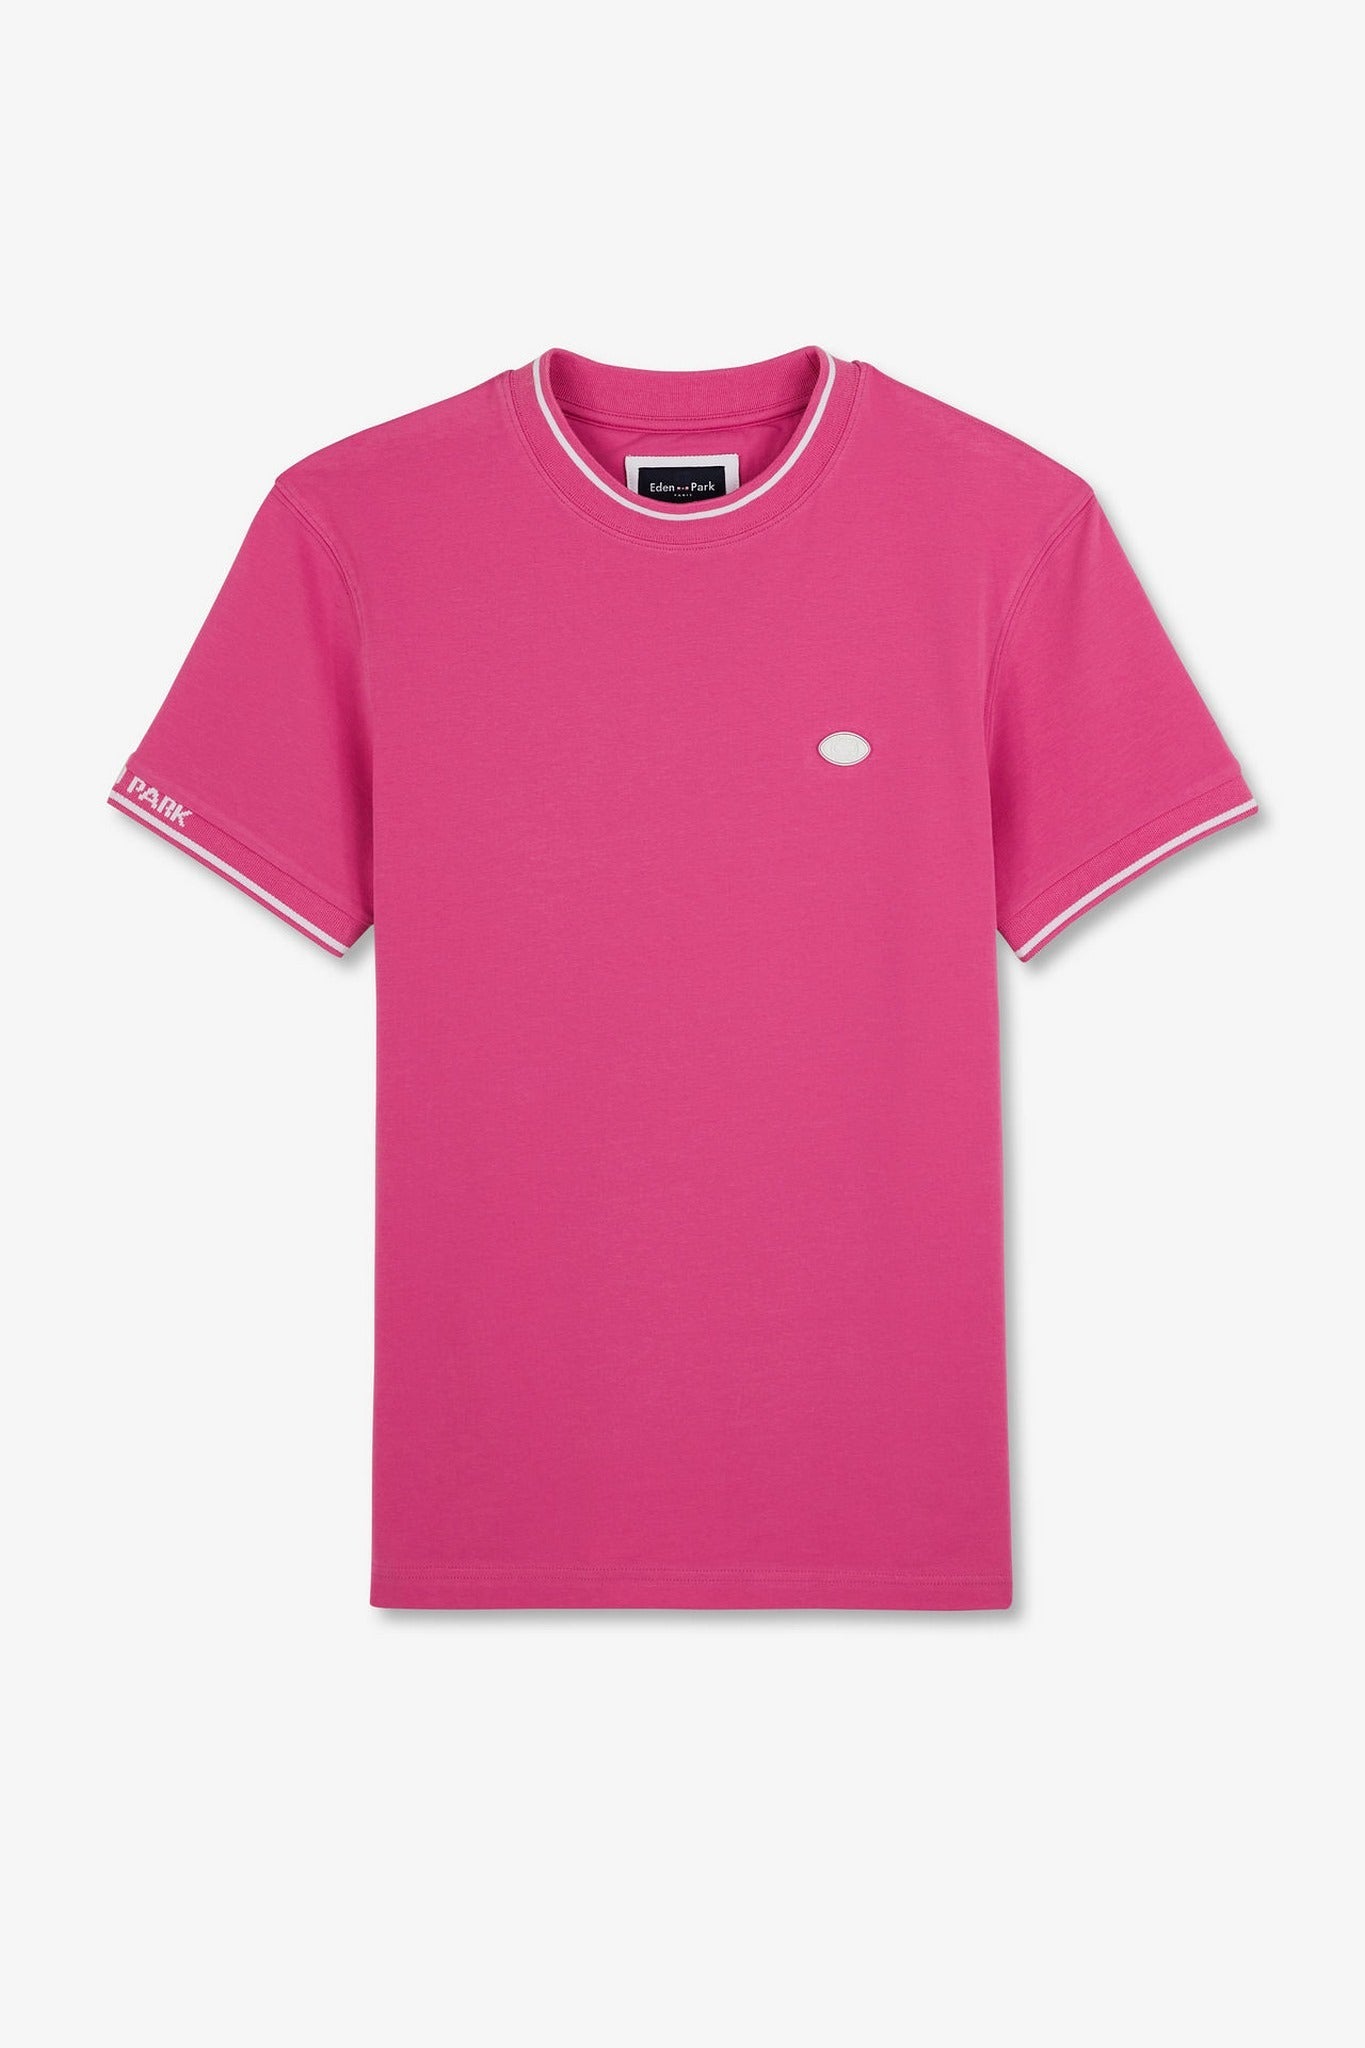 T-shirt rose à manches courtes - Image 2